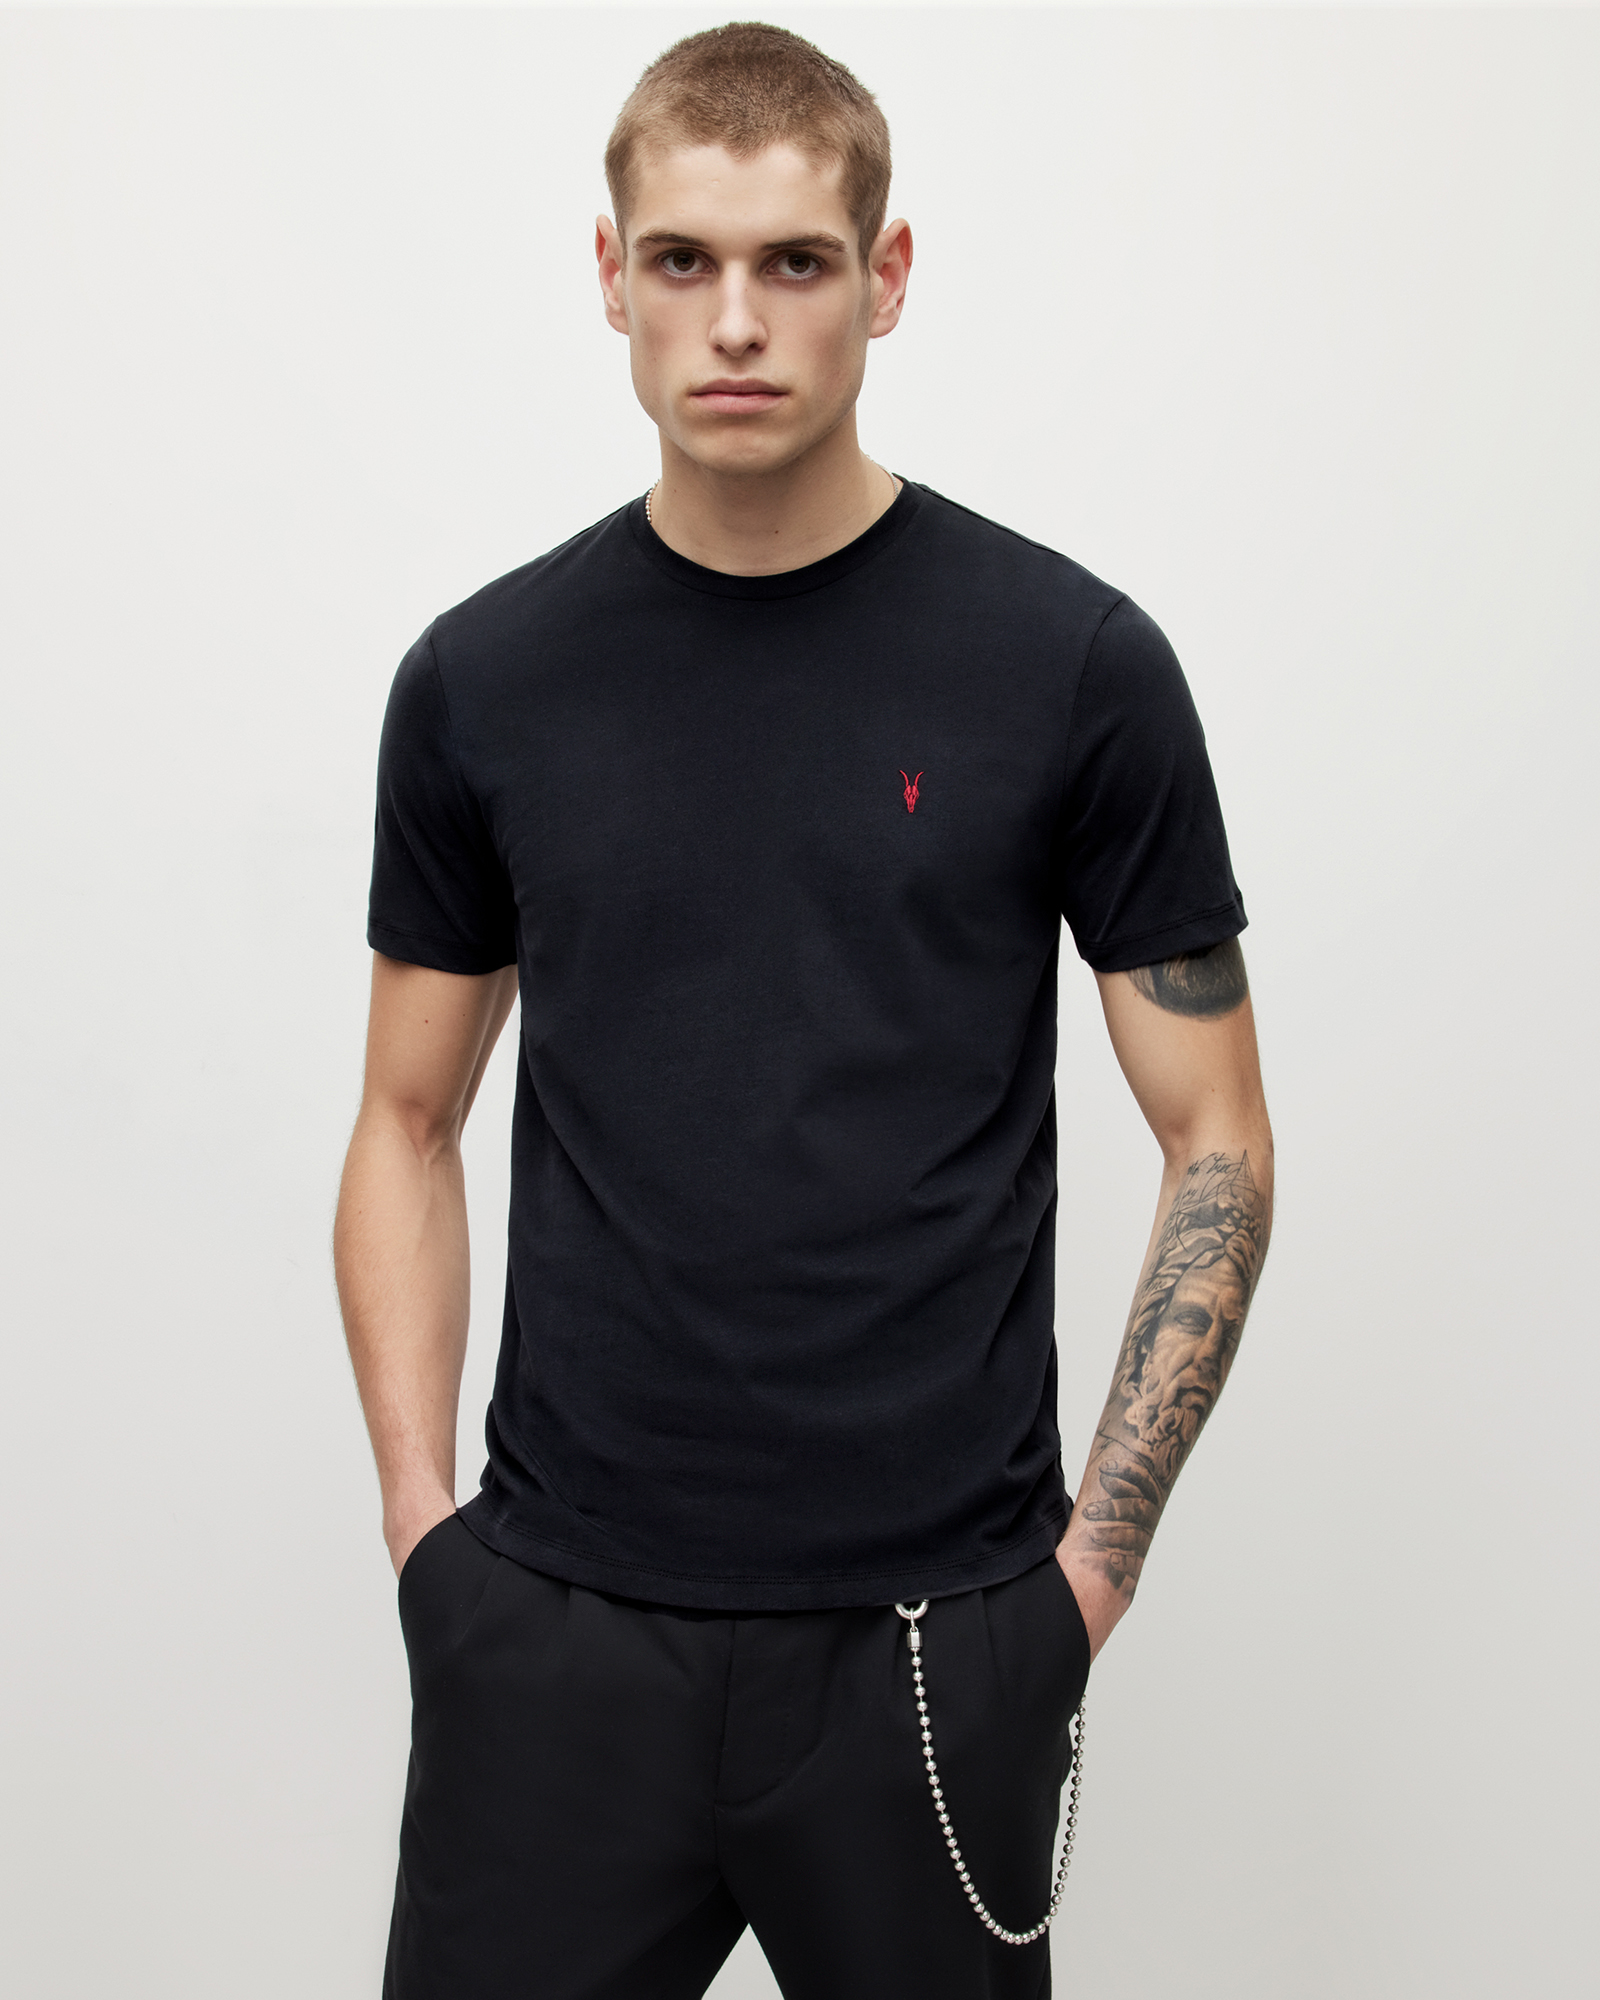 AllSaints Men's Brace Contrast Crew T-Shirt, Washed Black, Size: XXL